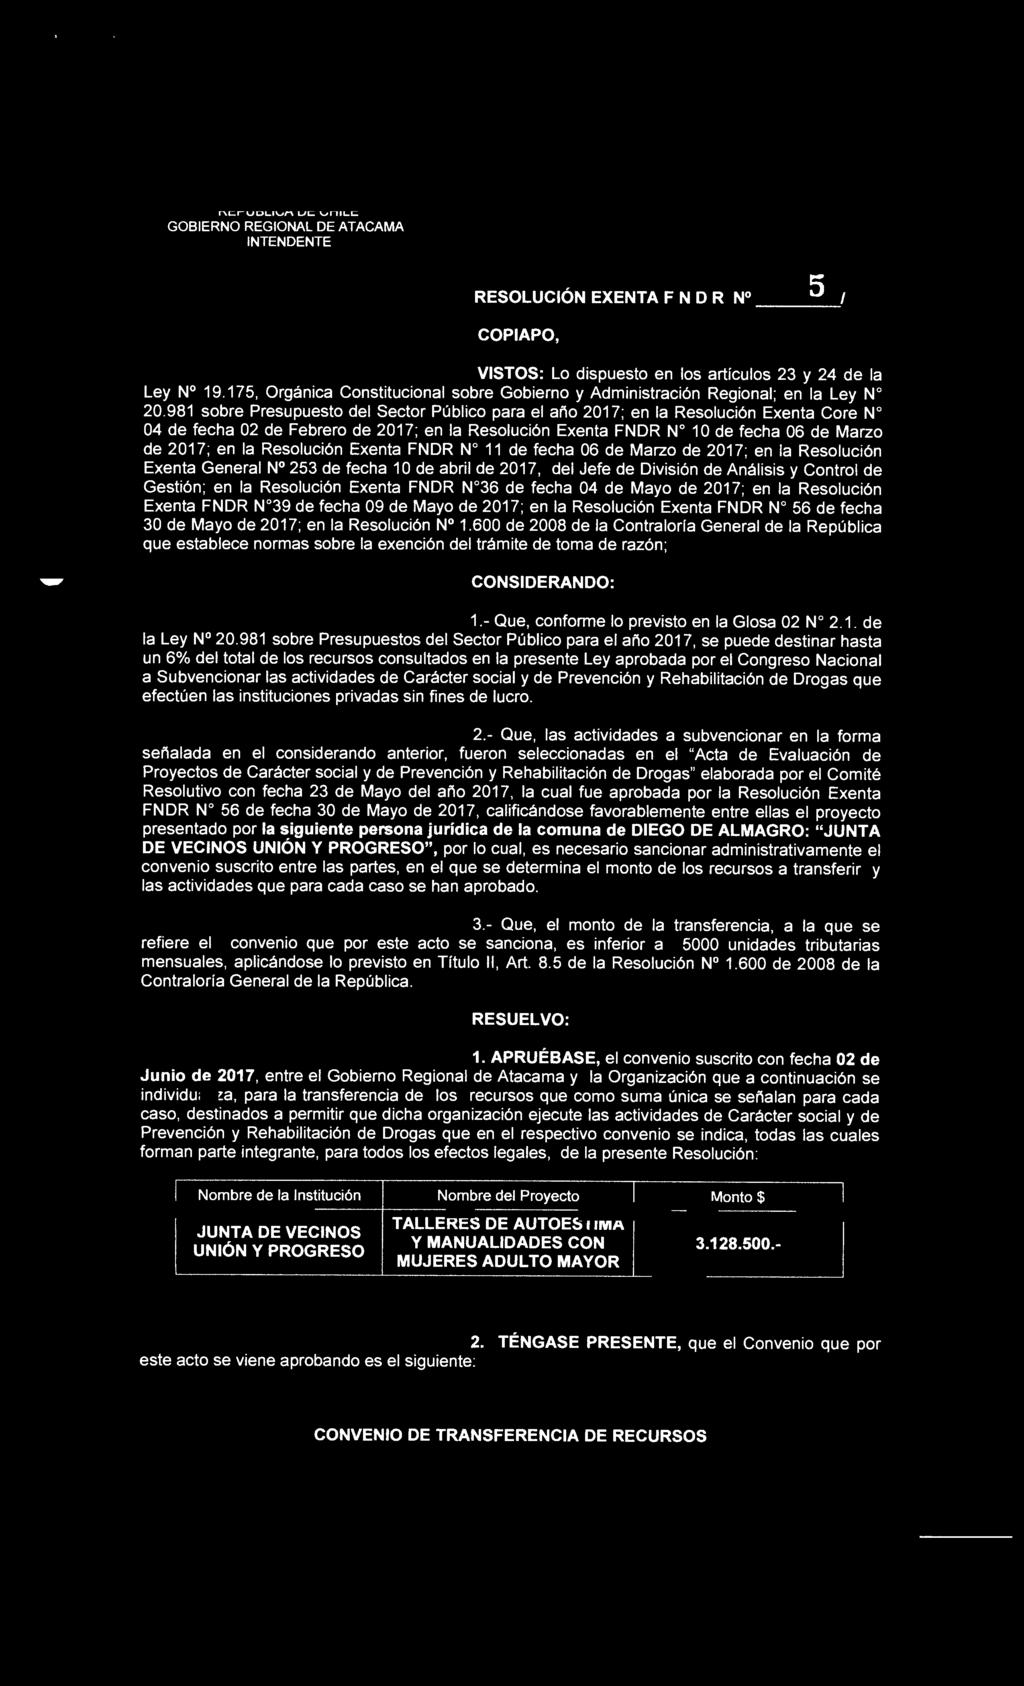 REPUBLICA DE CHILE GOBIERNO REGIONAL DE ATACAMA INTENDENTE RESOLUCIÓN EXENTA F N O R N 2 Q 5 1 COPIAPO, 2 1 JUN 2017 VISTOS: Lo dispuesto en los artículos 23 y 24 de la Ley N 19.